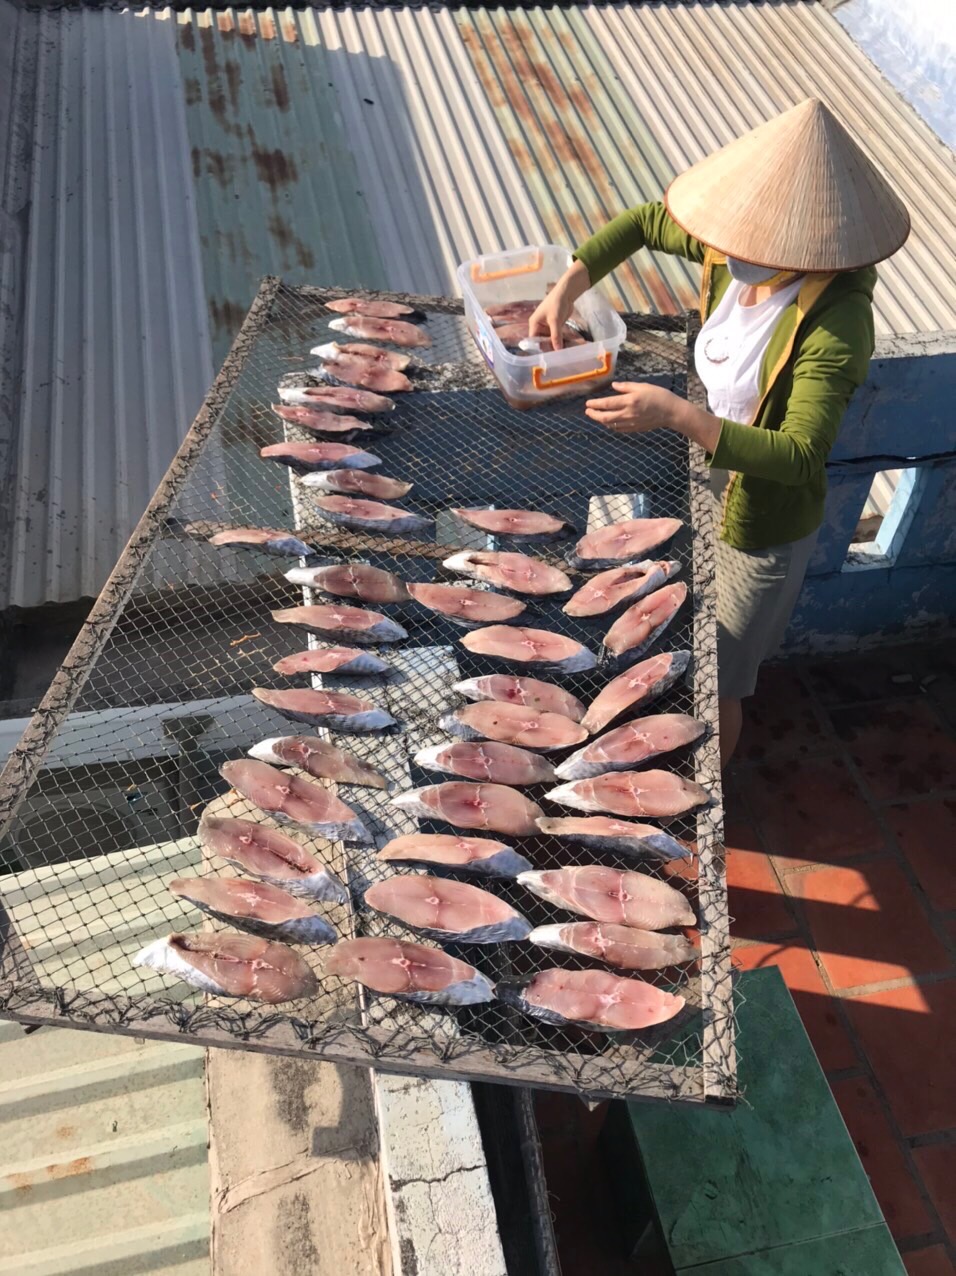 Những mẻ cá thu được chị Trần Thị Hải thu gom từ Nghệ An vào bán cho khách.